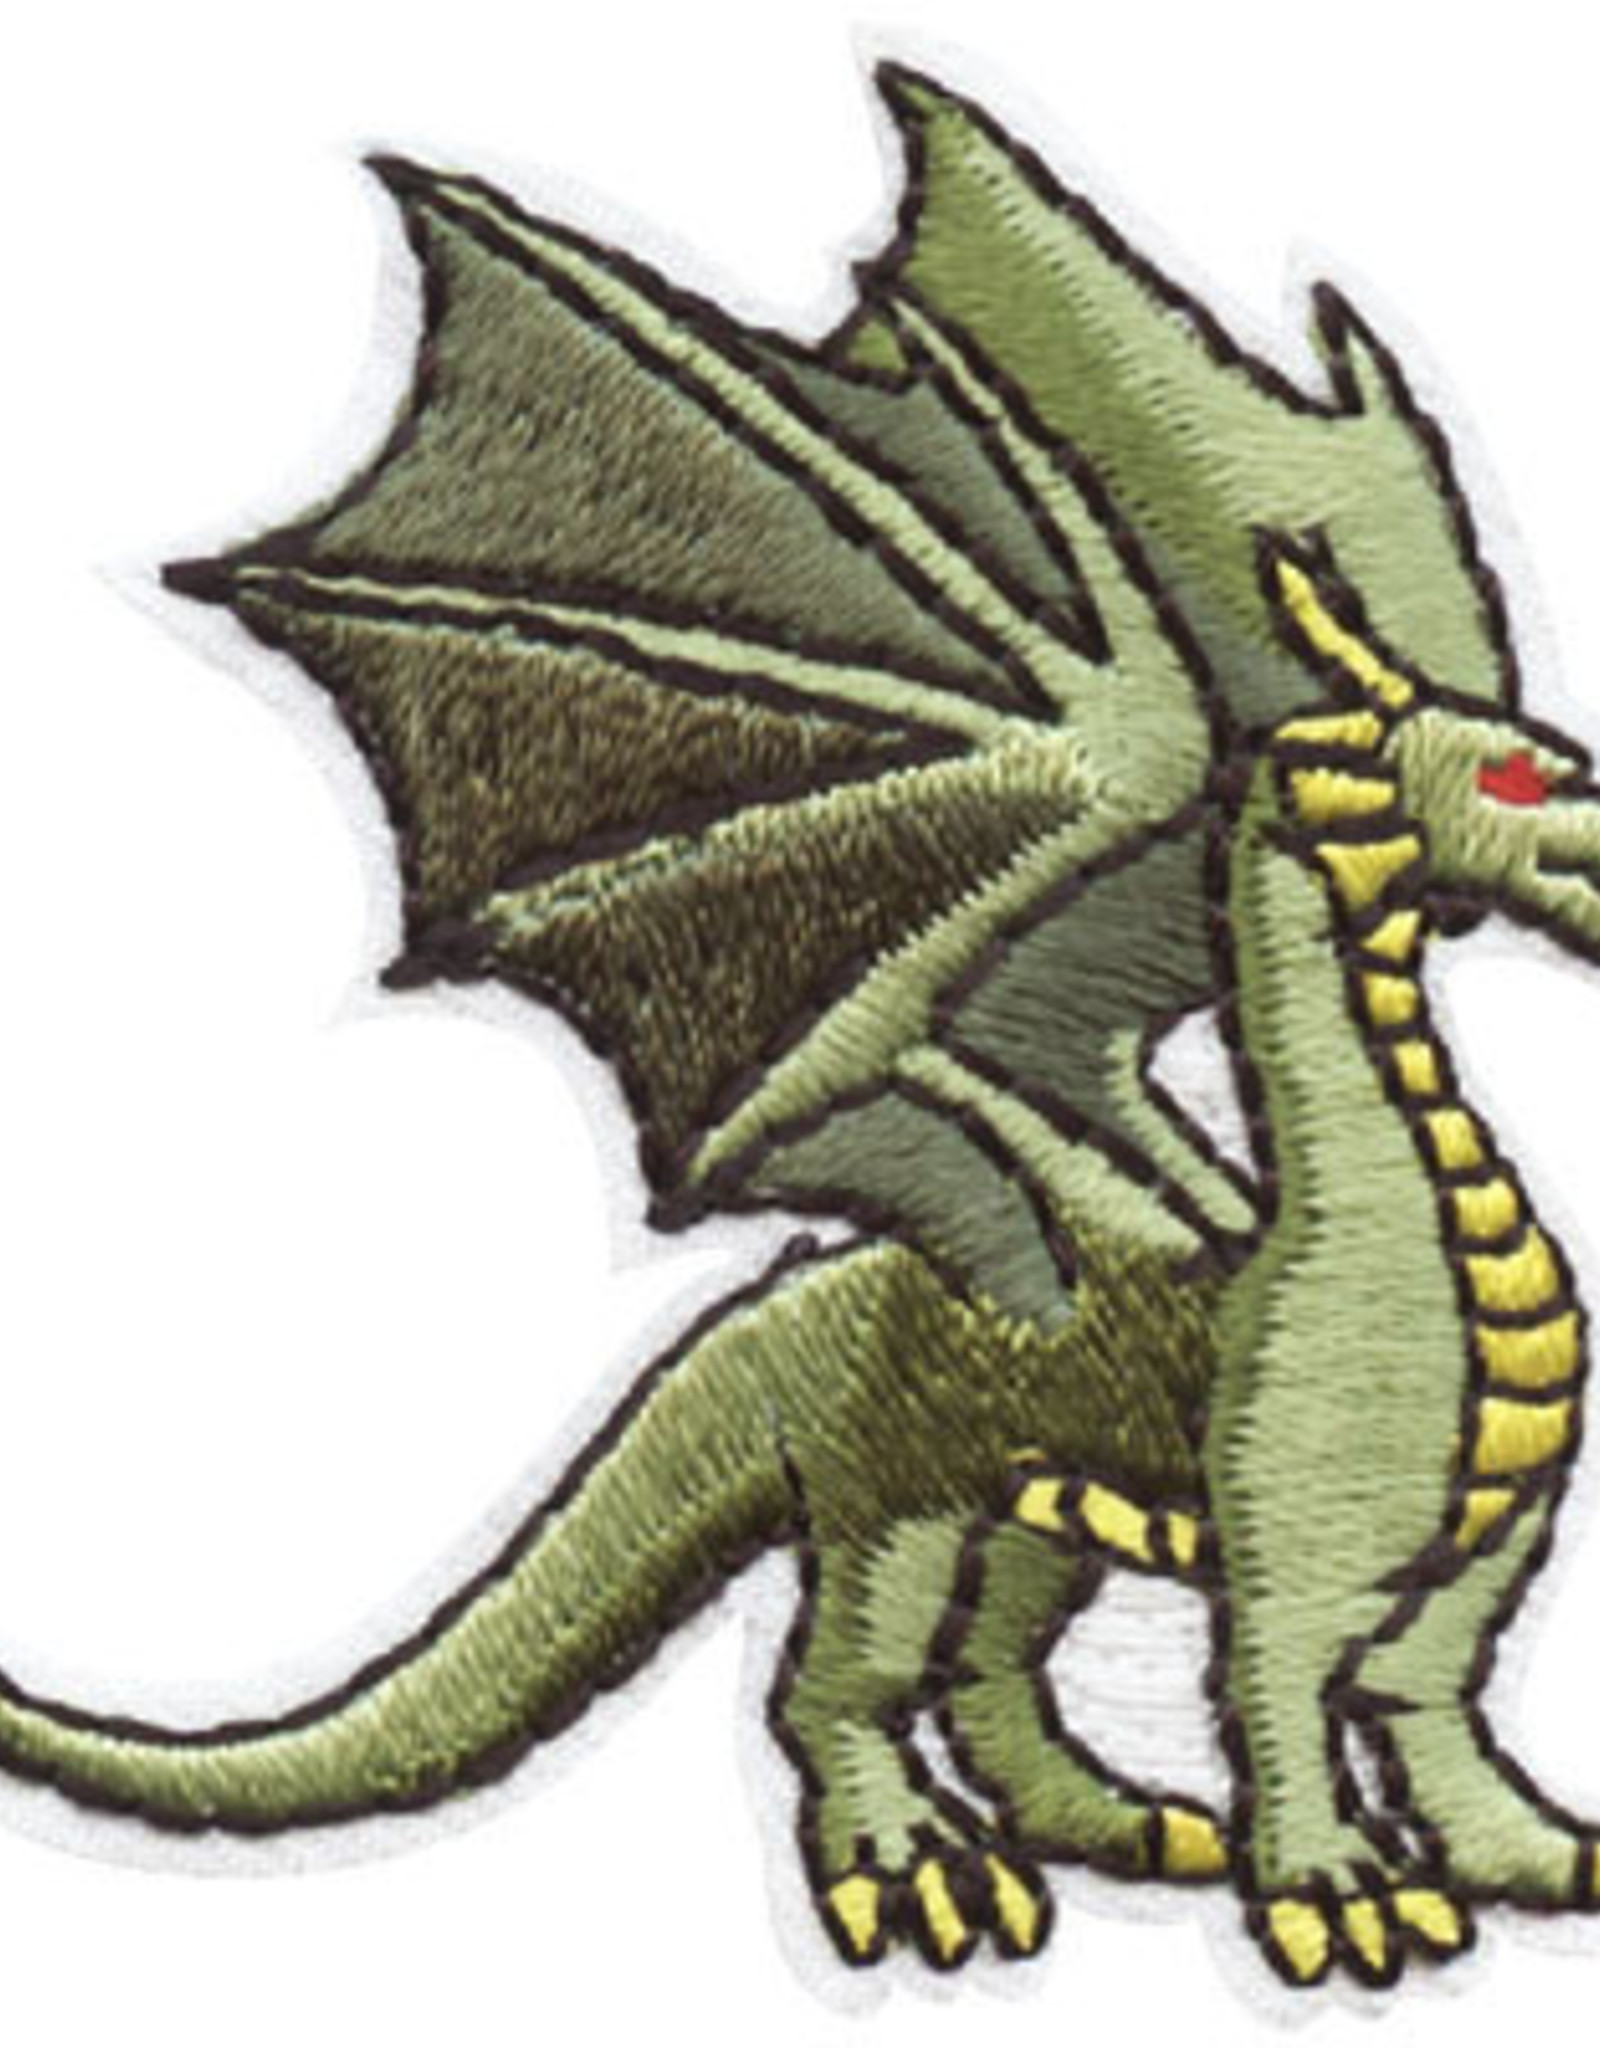 Advantage Emblem & Screen Prnt Dragon Fun Patch